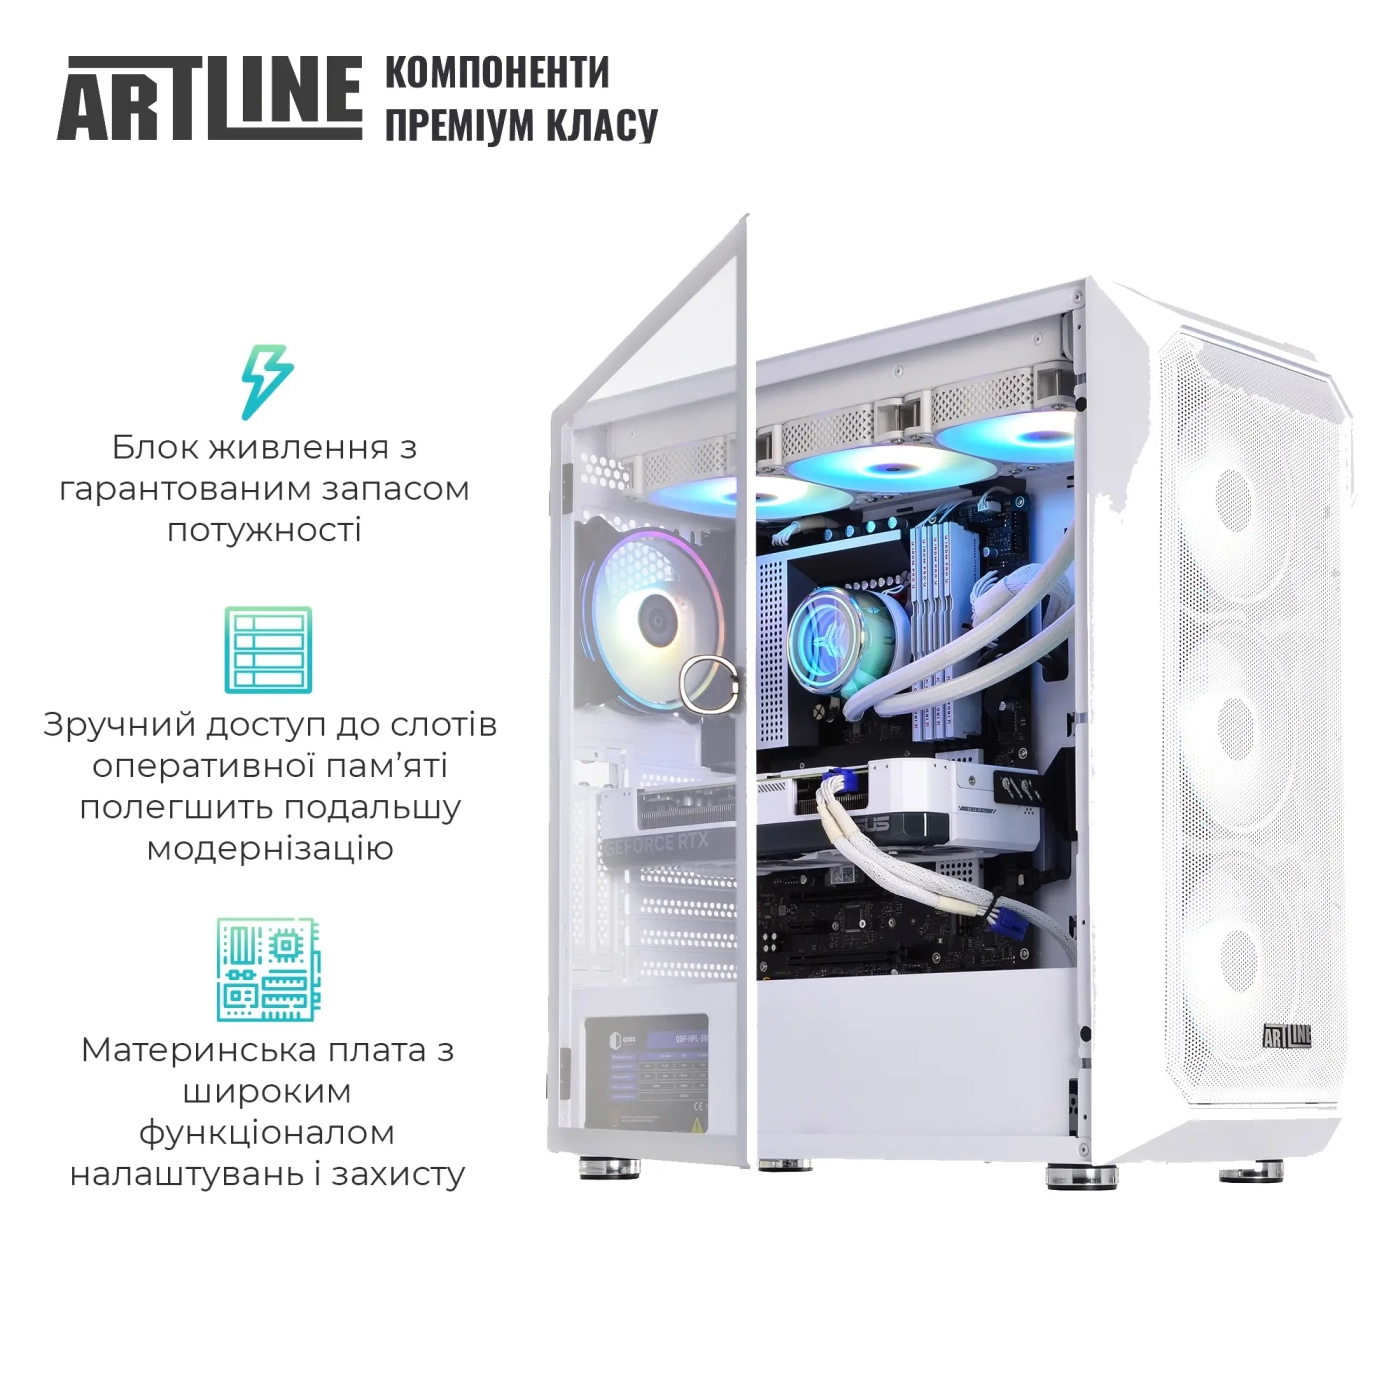 Купить Компьютер ARTLINE Gaming X67WHITE (X67WHITEv46) - фото 4